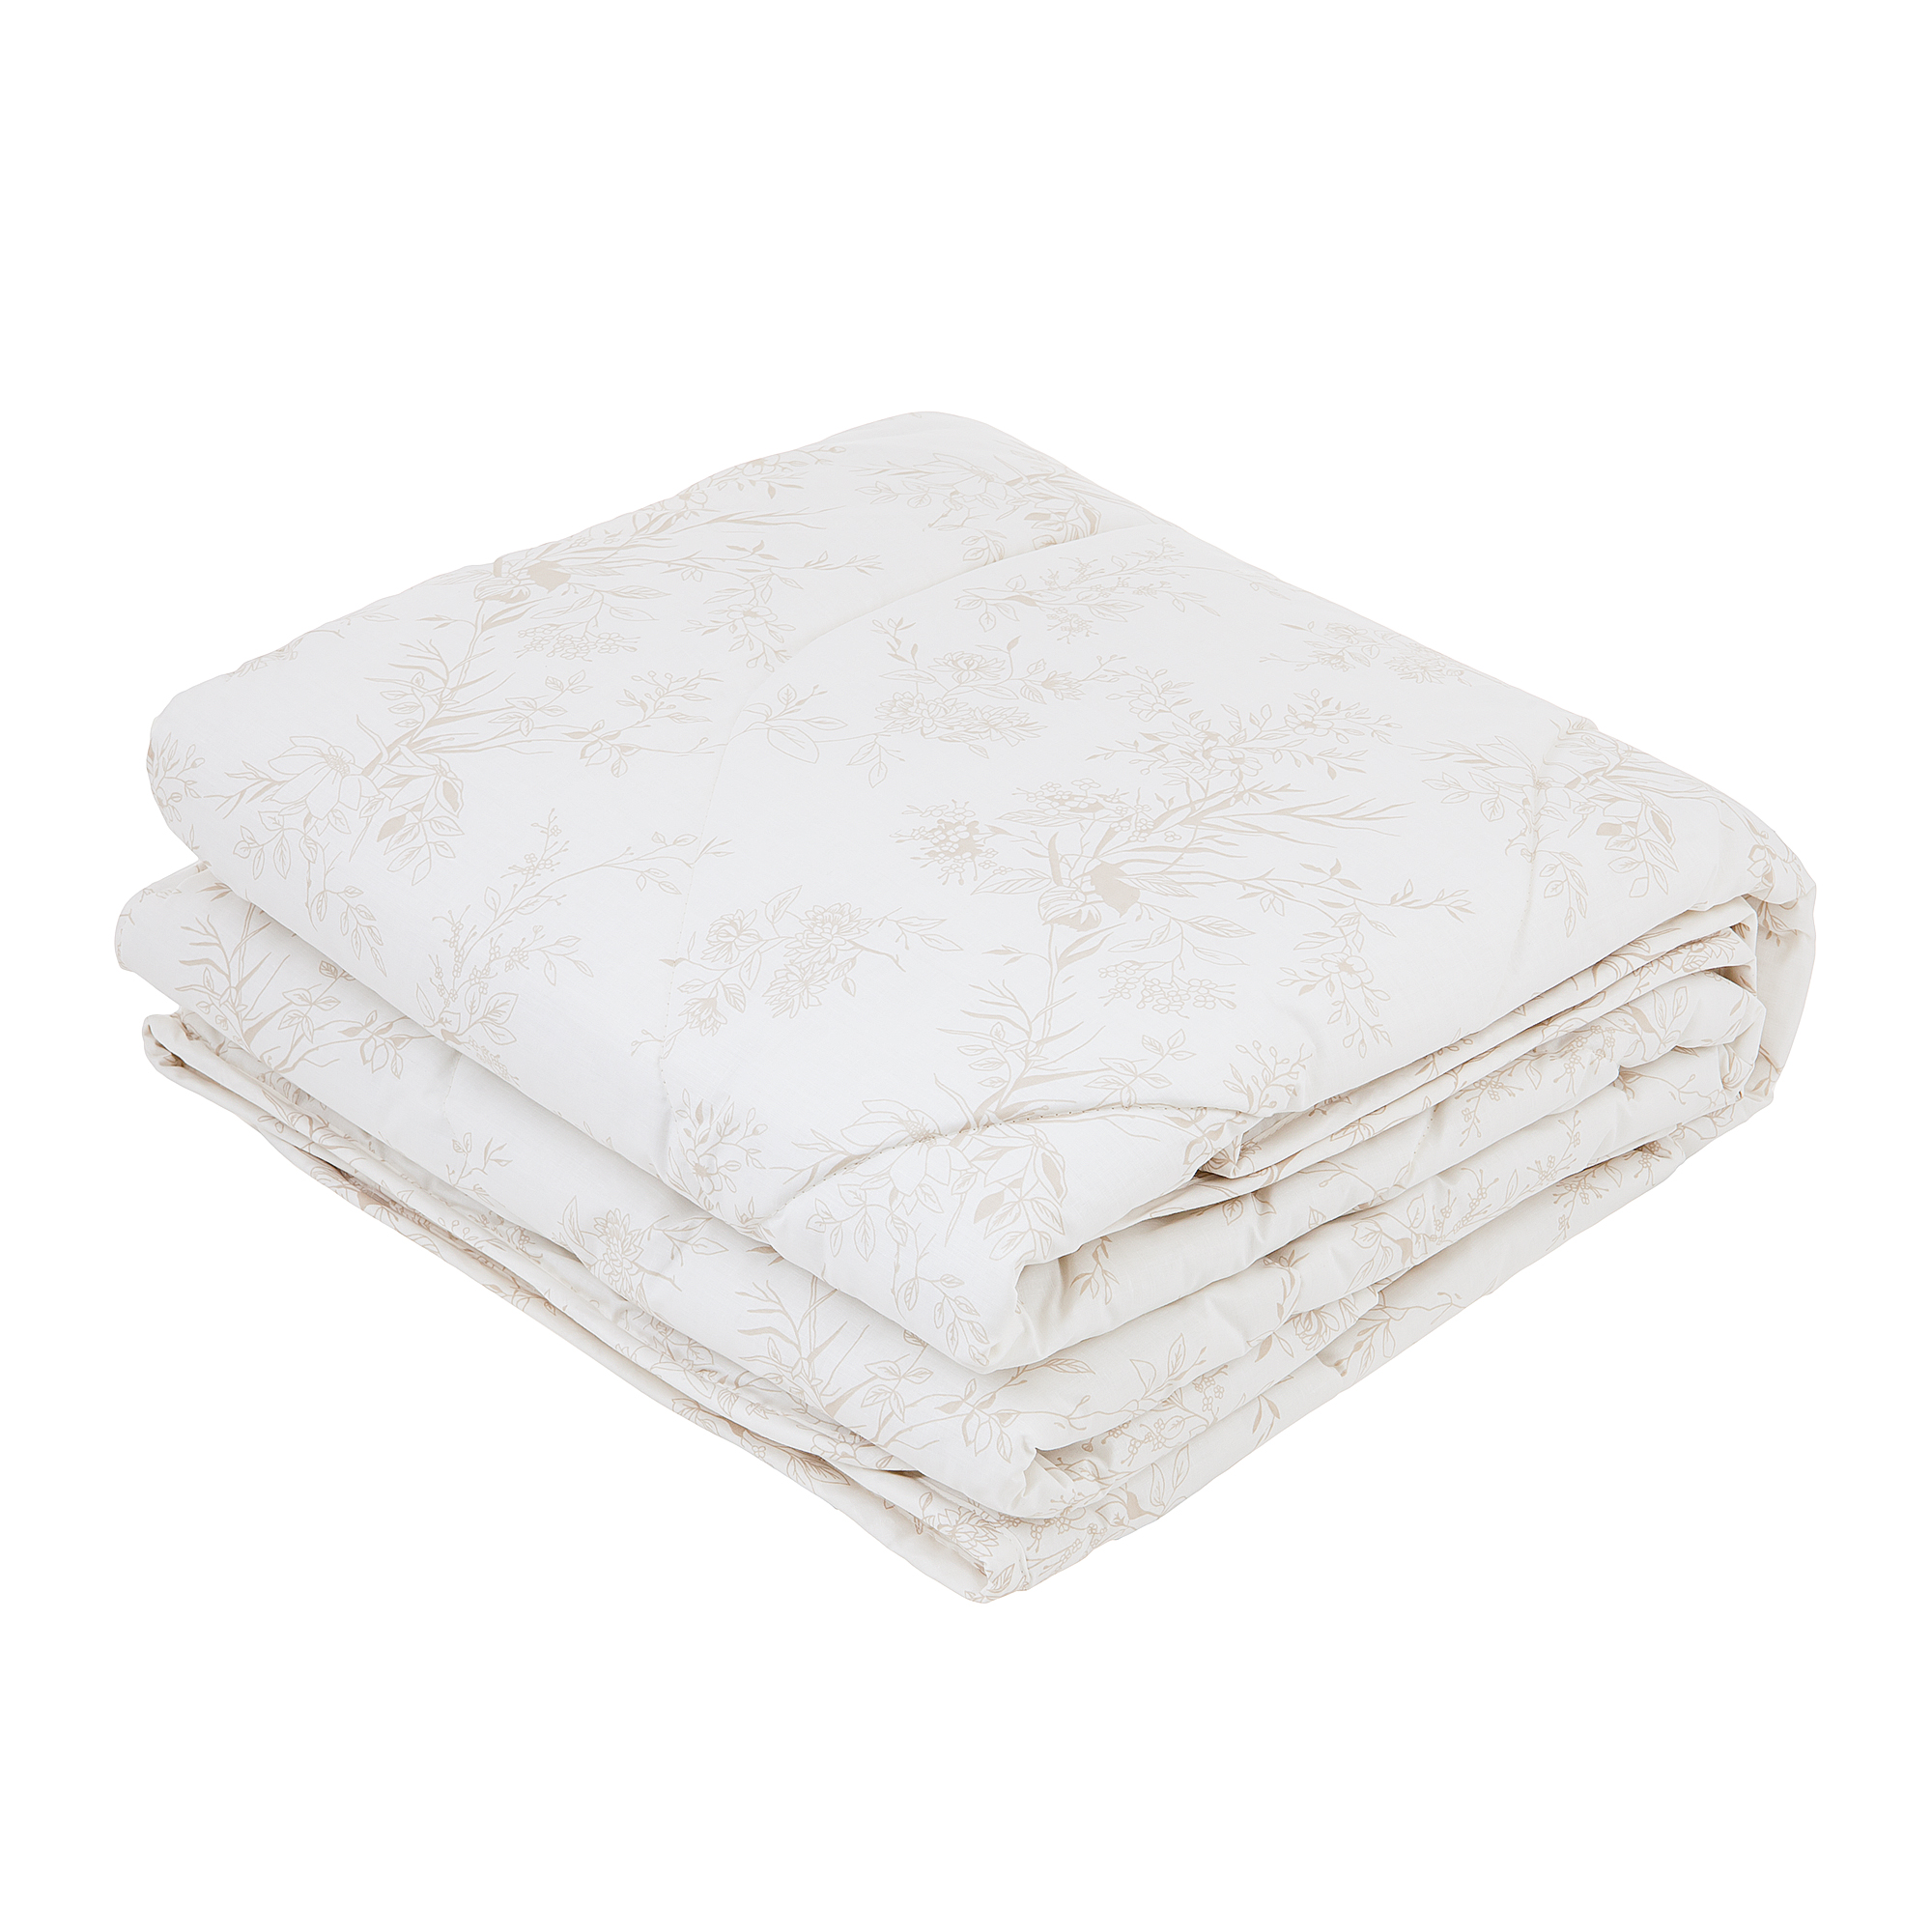 Одеяло Classic by T Хлопок-натурэль 200х210 одеяло classic by t eucalyptus 200х210 см